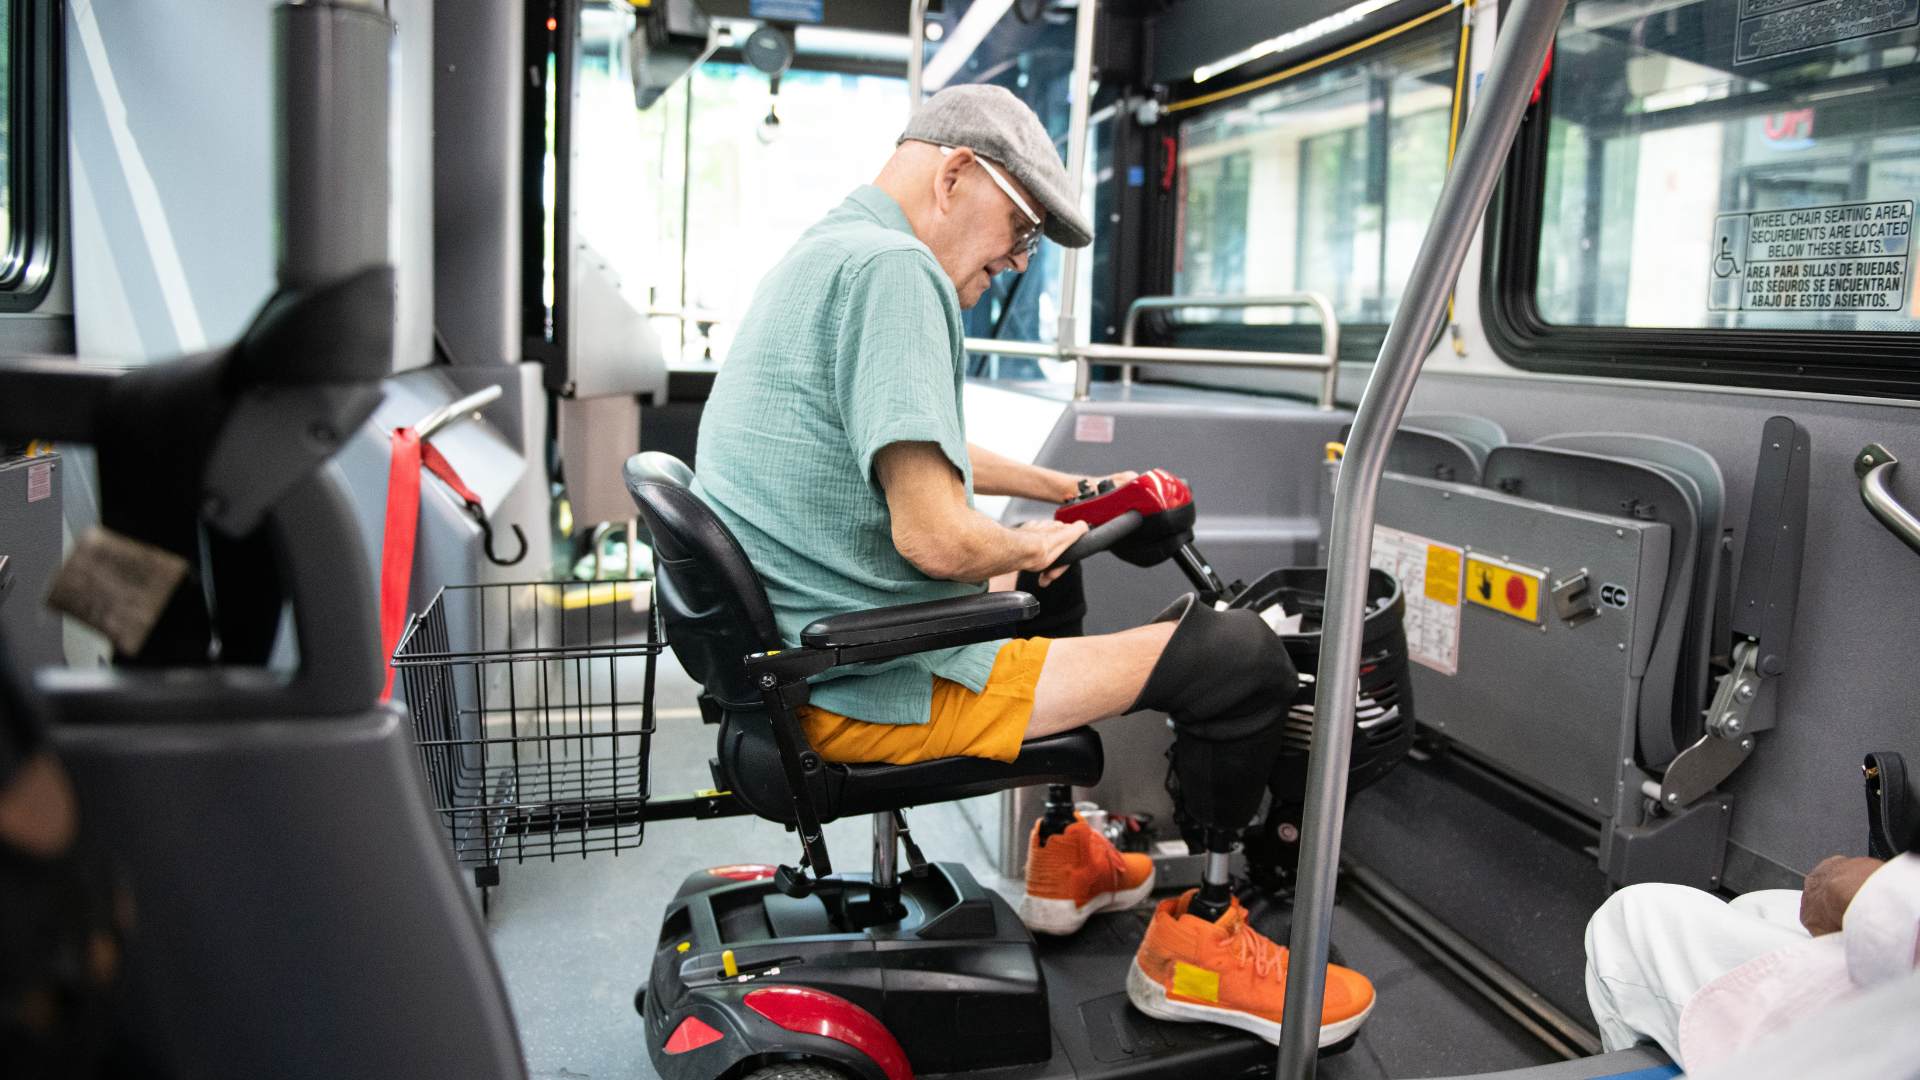 Senior Man Rides Bus